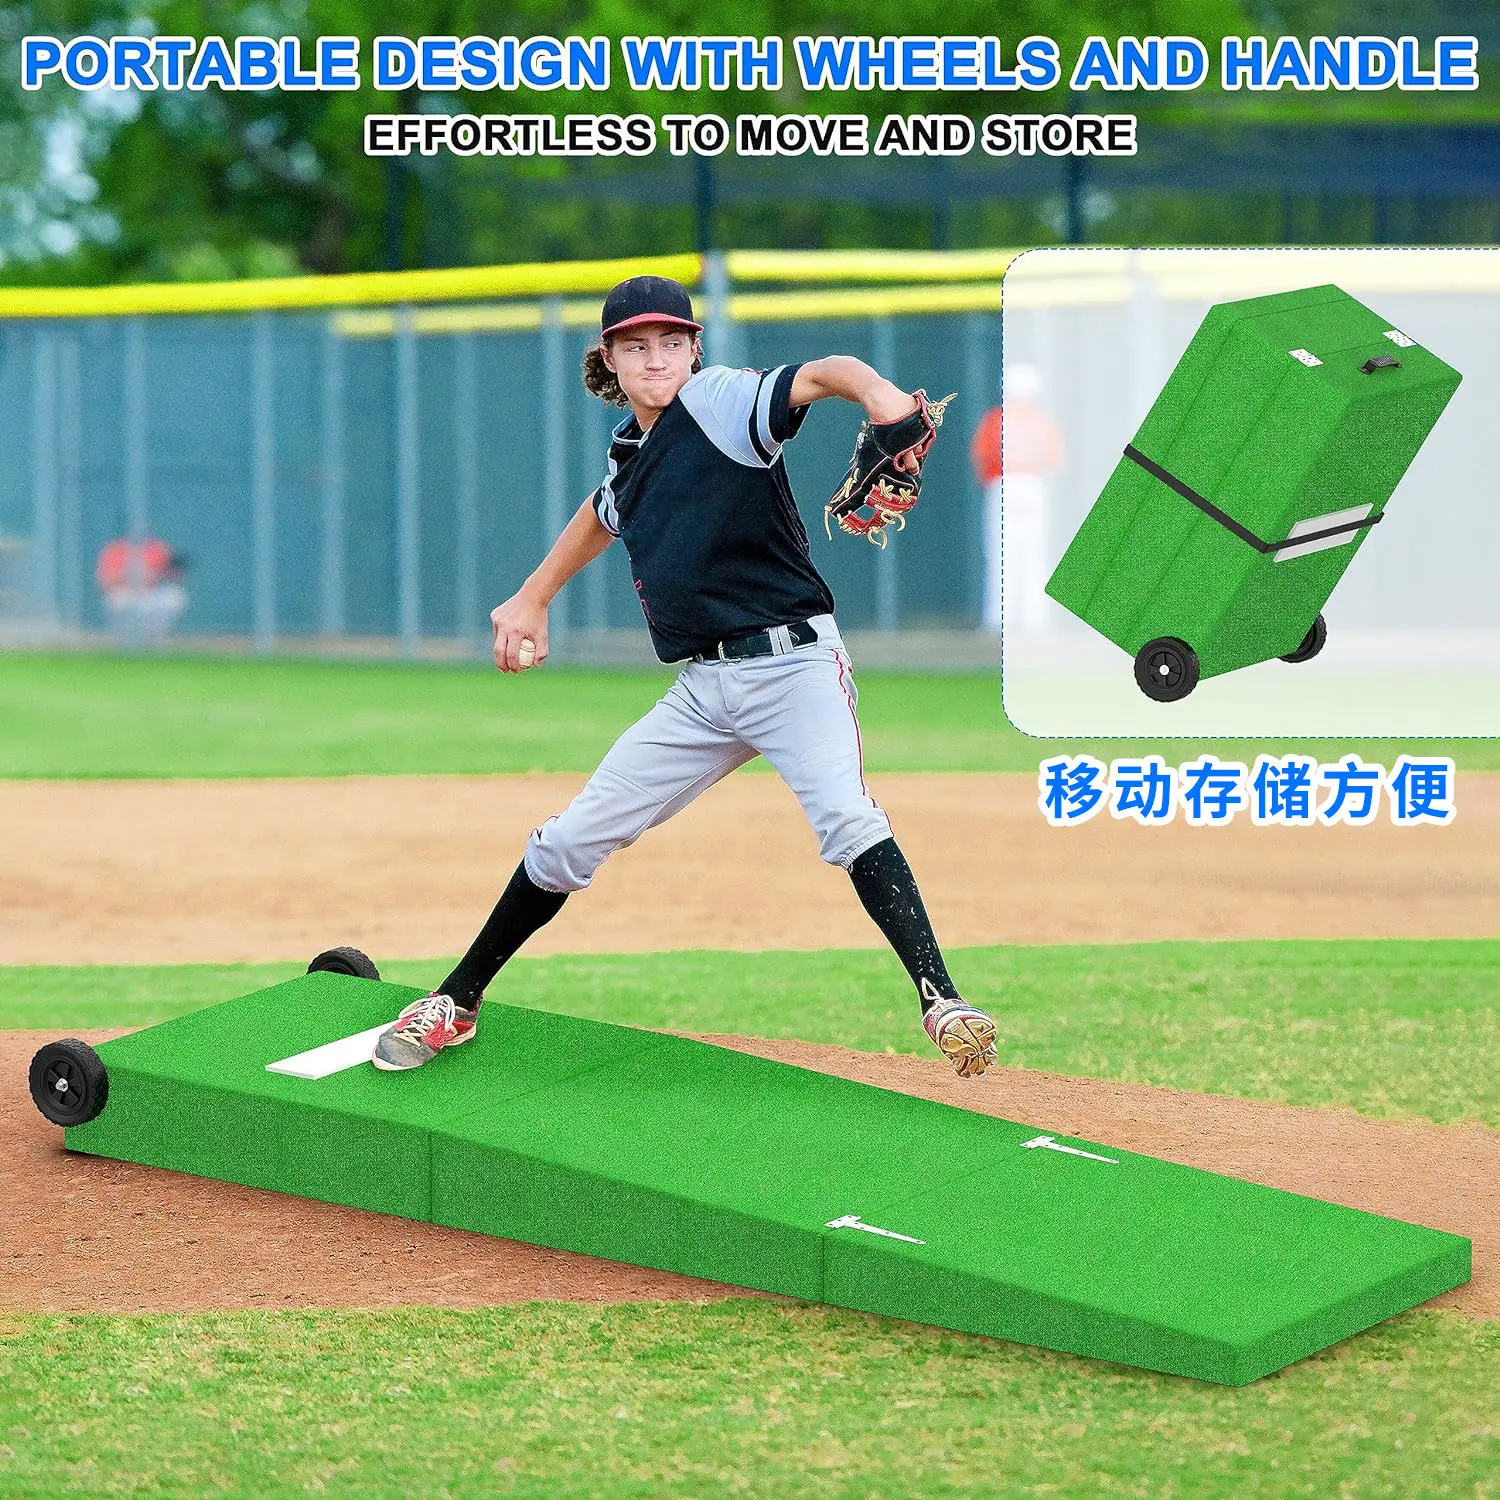 בייסבול וסופטבול משטחי כדור אימון ניידים ללא החלקה ציוד אימון והכה